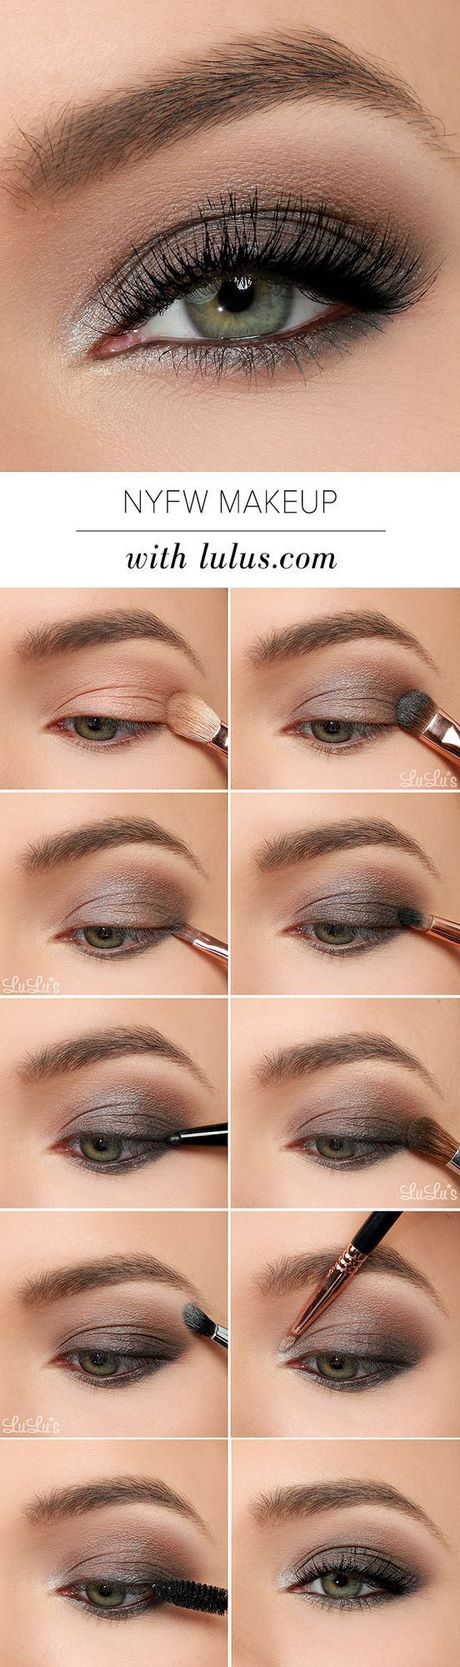 eye-makeup-tutorial-for-brown-eyes-33_9 Oogmakeup les voor bruine ogen